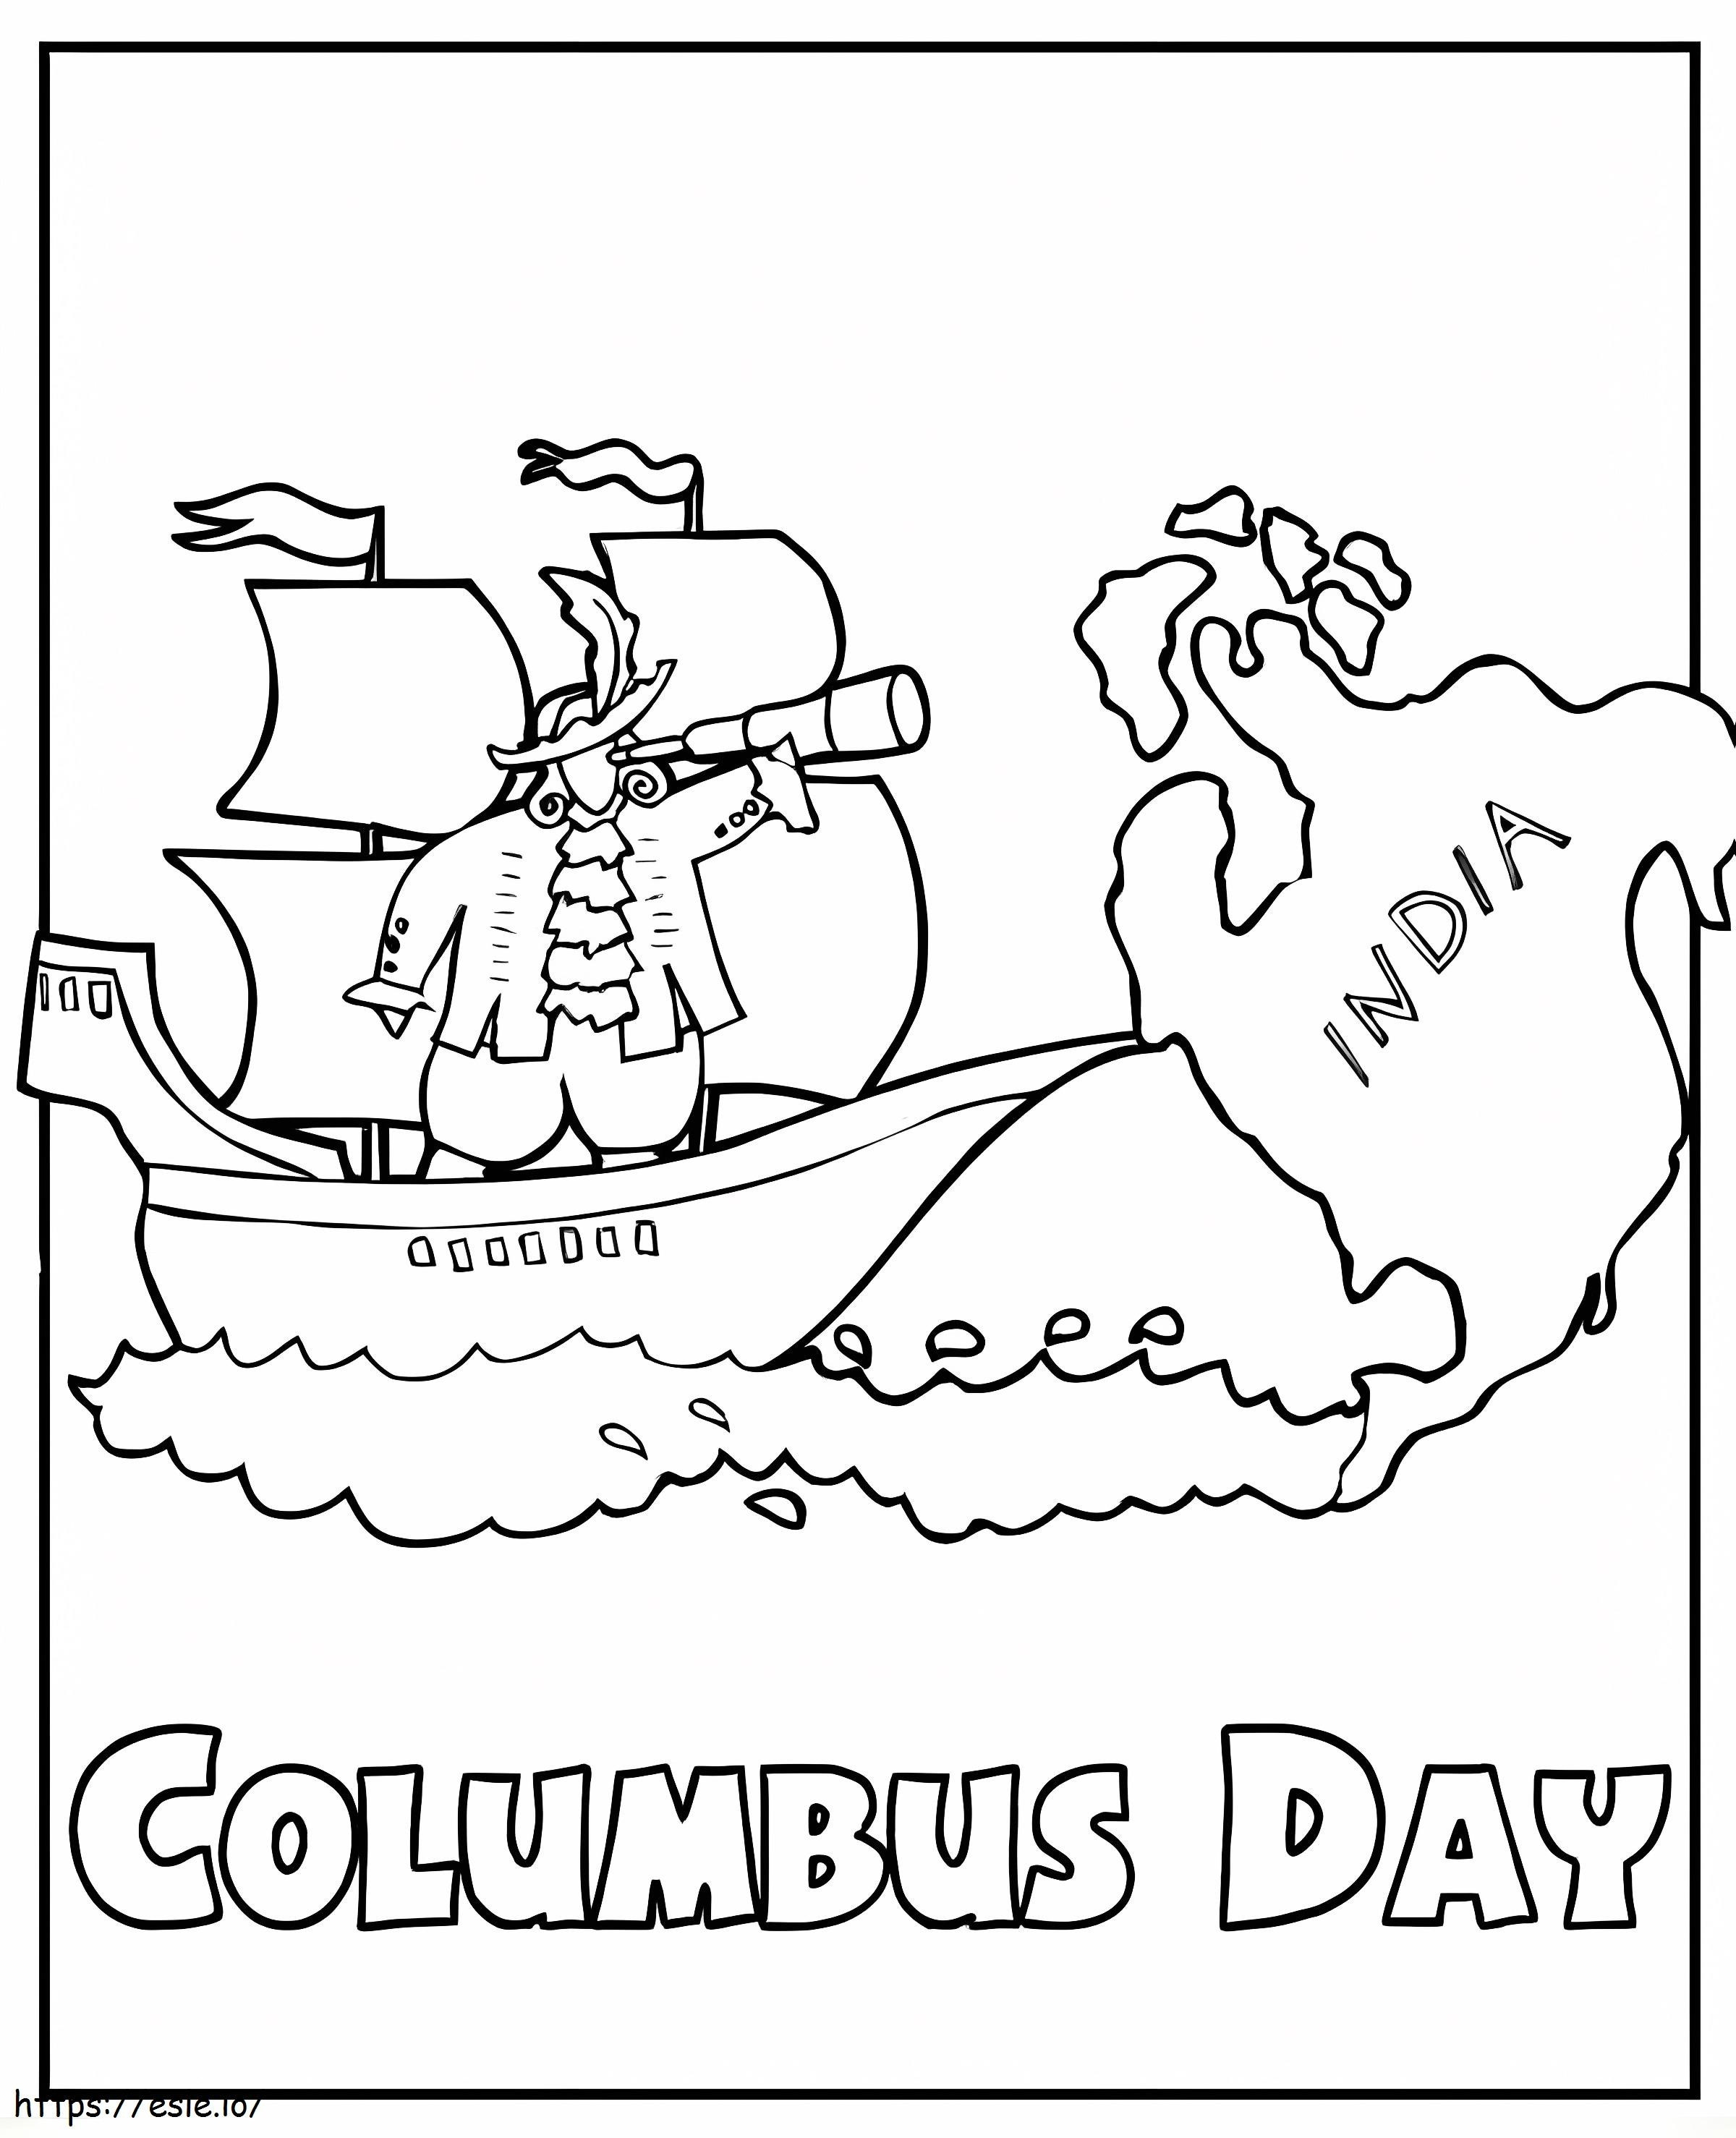 Columbusdag 5 kleurplaat kleurplaat